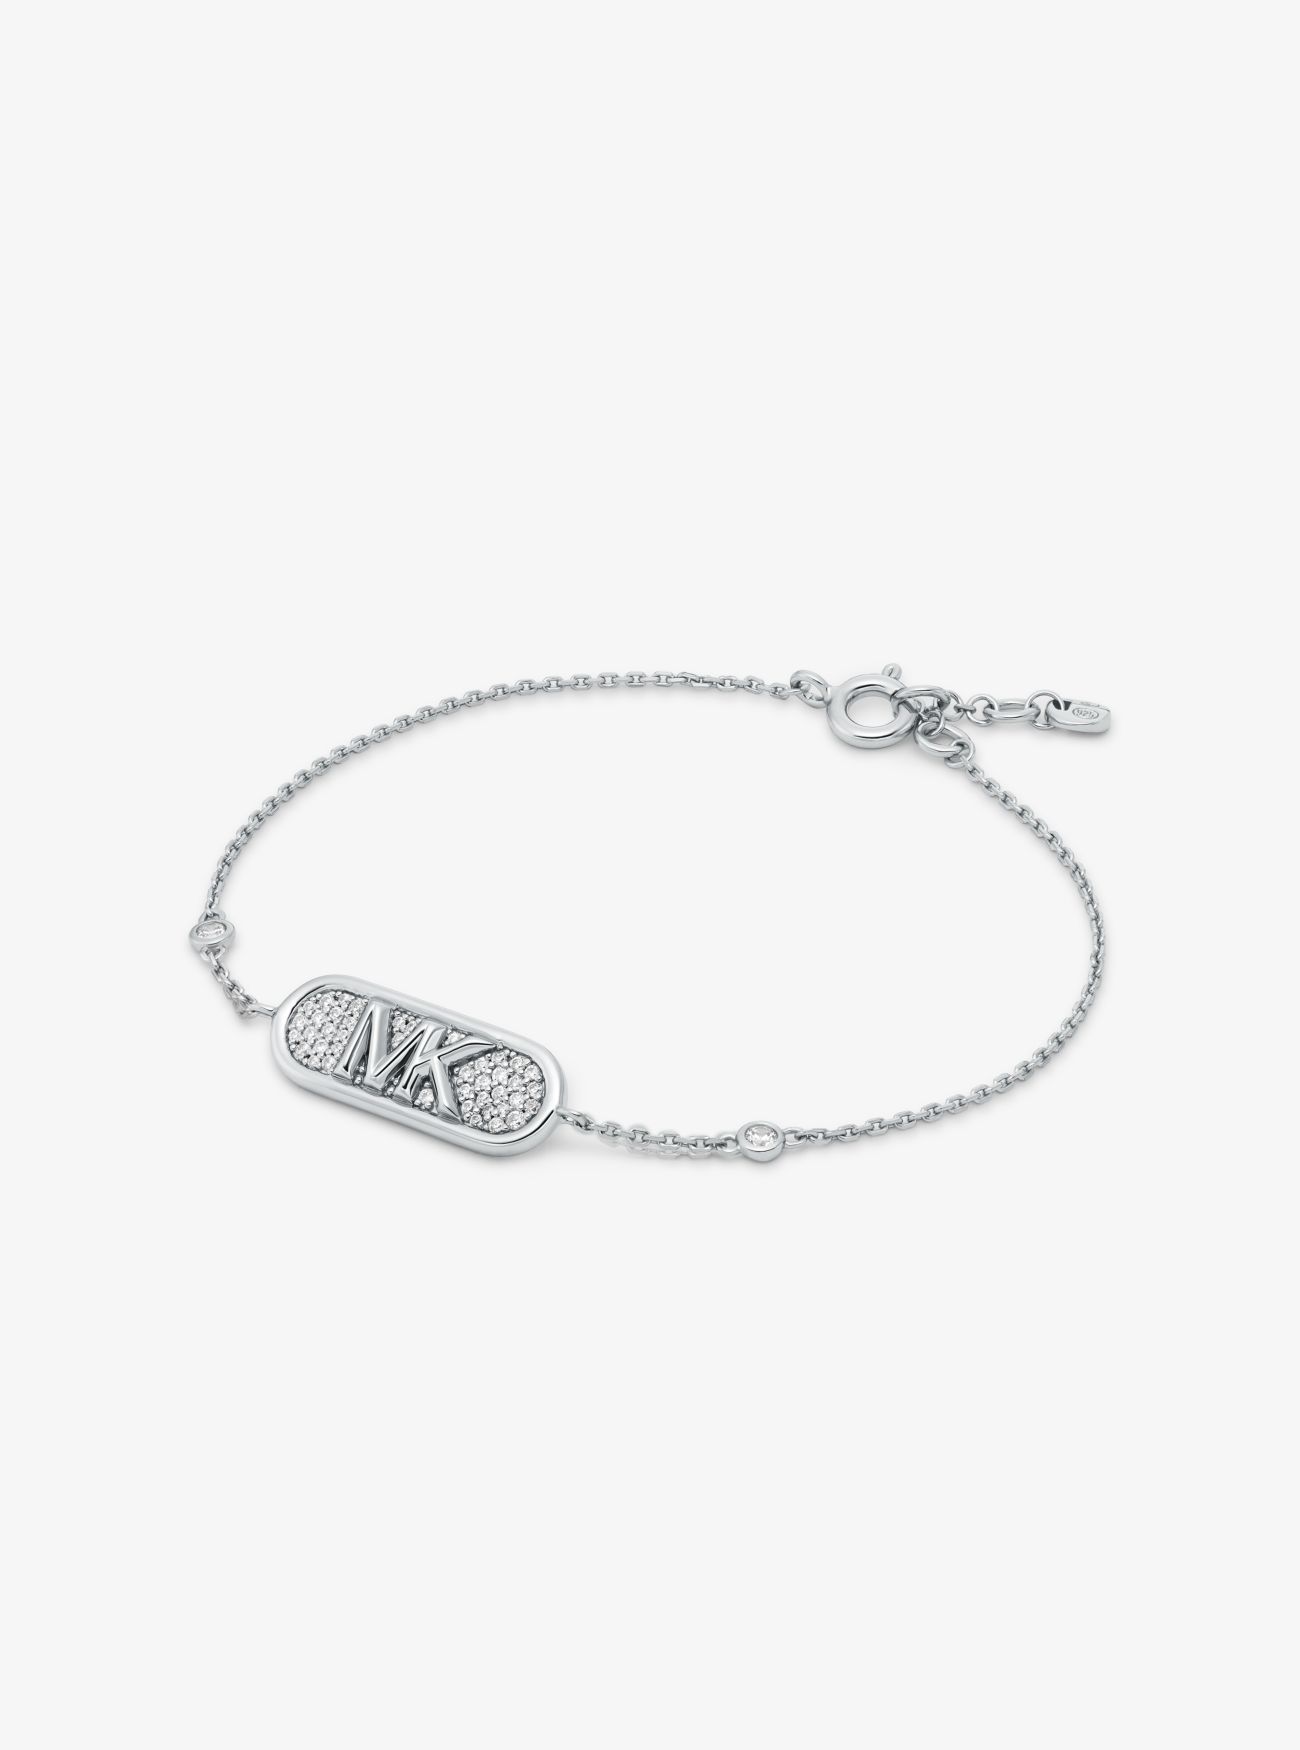 MK Pavé Precious Metal-Plated and Sterling Silver Empire Logo Bracelet - Silver - Michael Kors